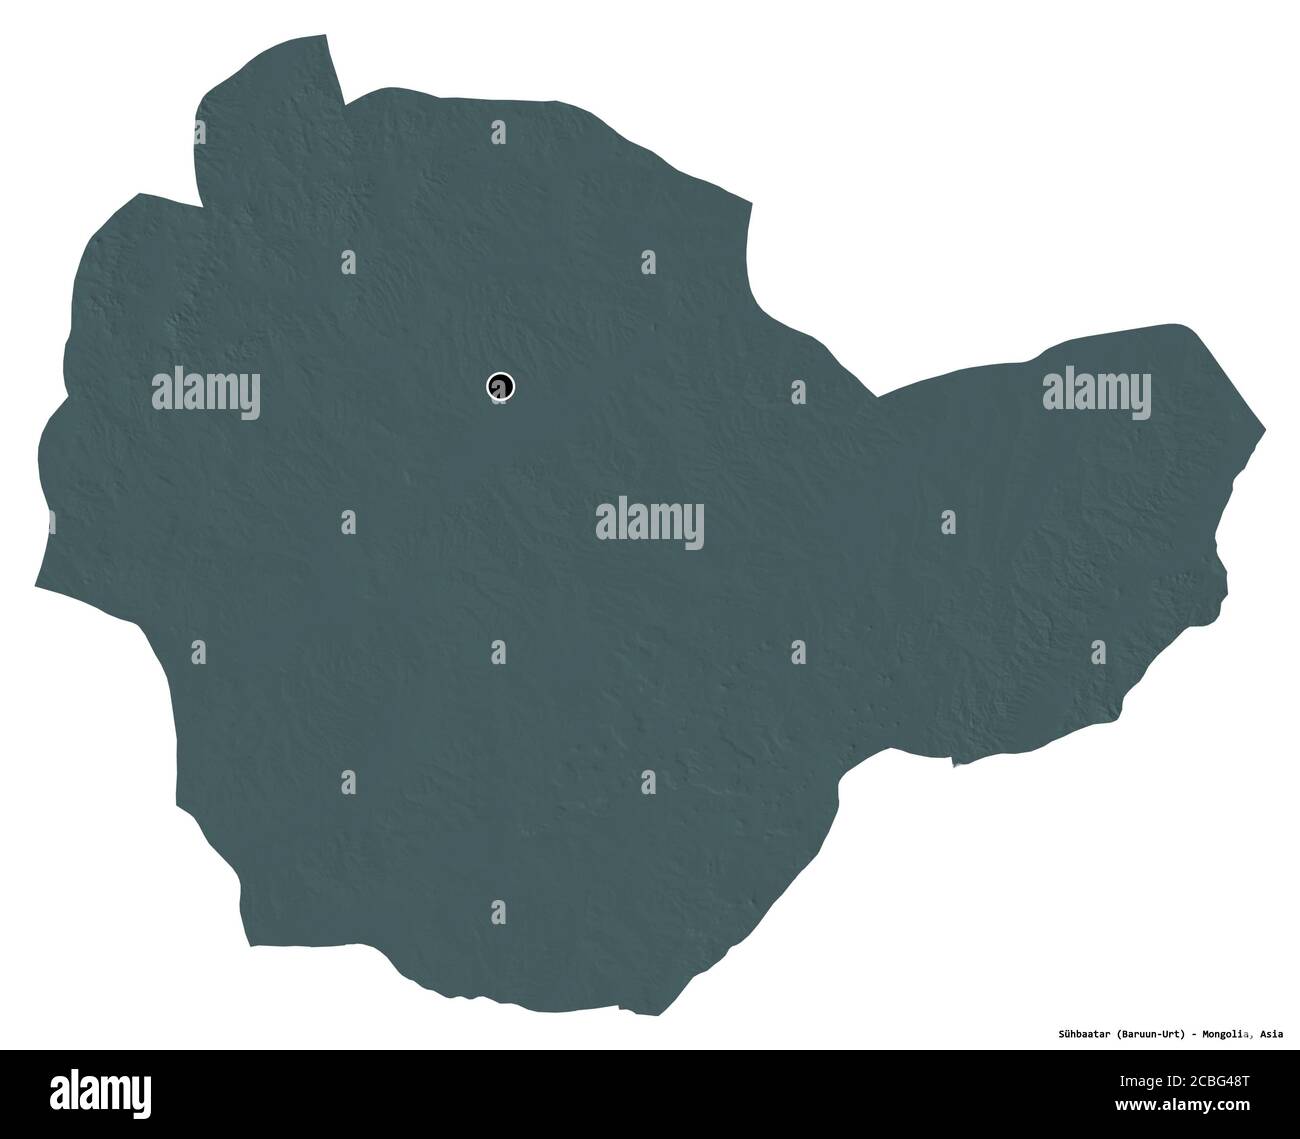 Forme de Sühbaatar, province de Mongolie, avec sa capitale isolée sur fond blanc. Carte d'altitude en couleur. Rendu 3D Banque D'Images